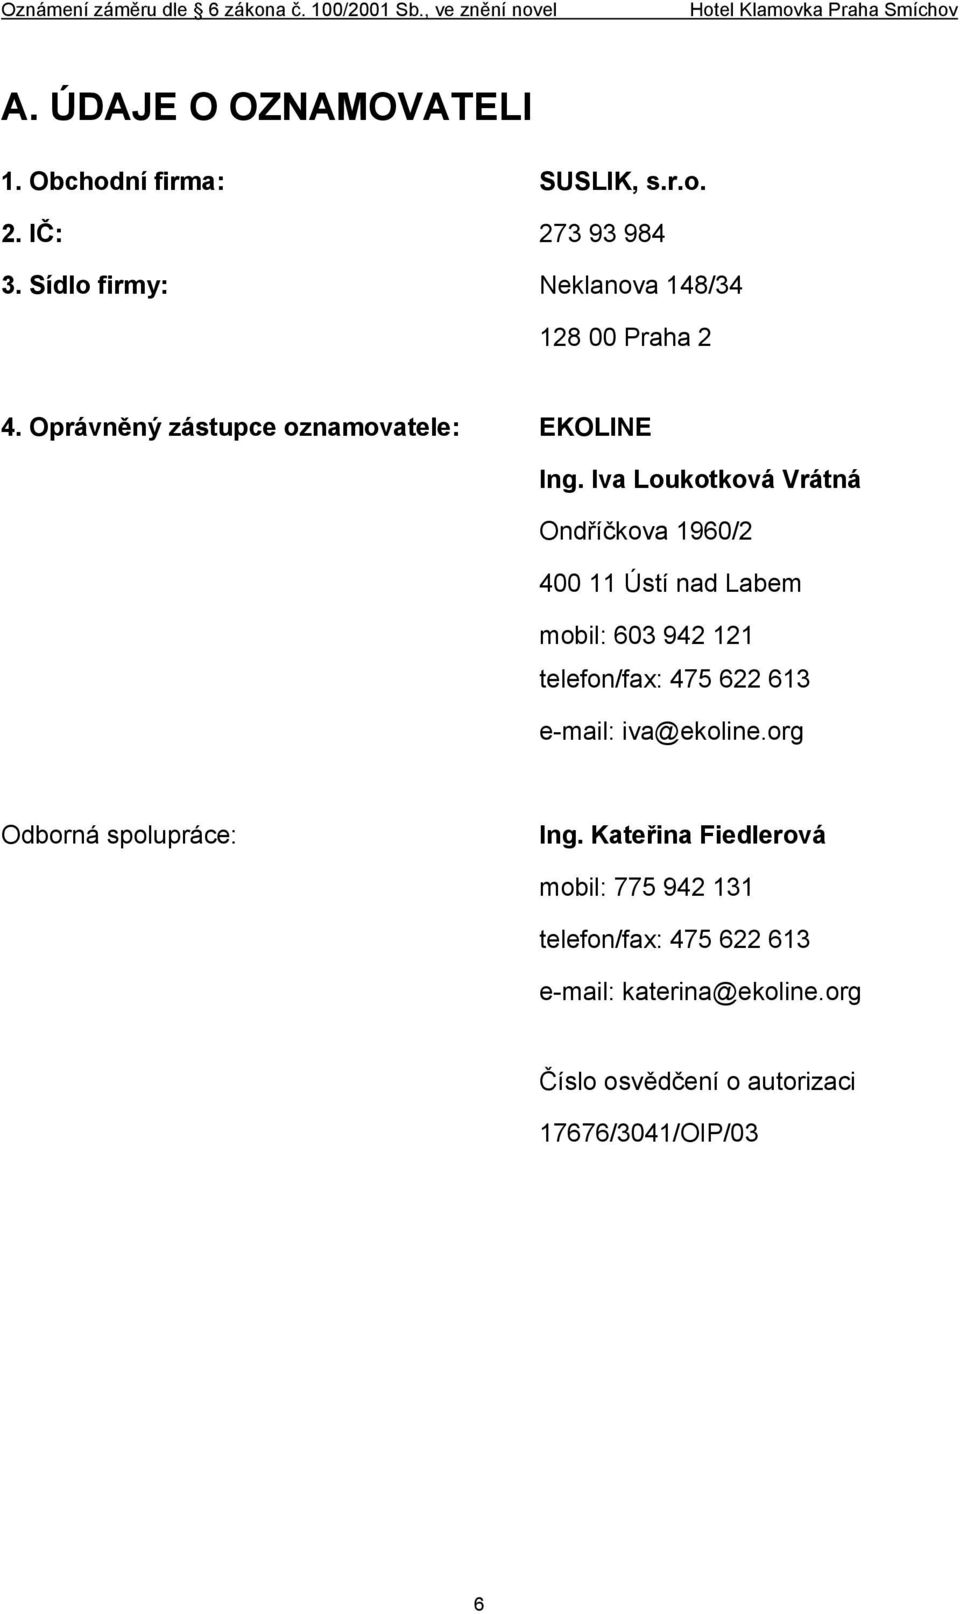 Iva Loukotková Vrátná Ondříčkova 1960/2 400 11 Ústí nad Labem mobil: 603 942 121 telefon/fax: 475 622 613 e-mail: